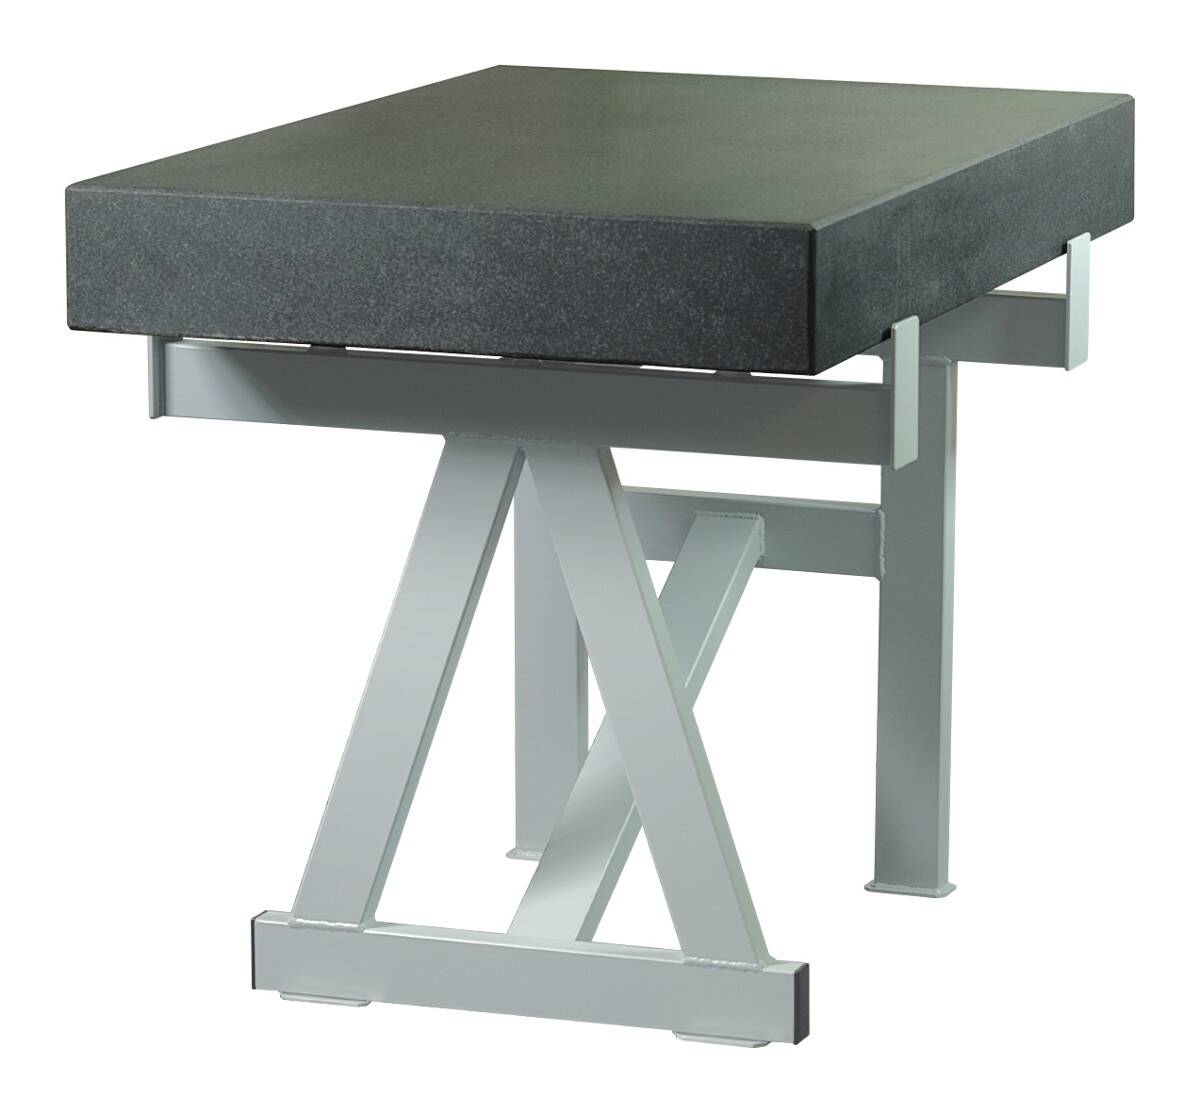 SCHUT stół do płyty pomiarowej 800x500x100mm 131.019